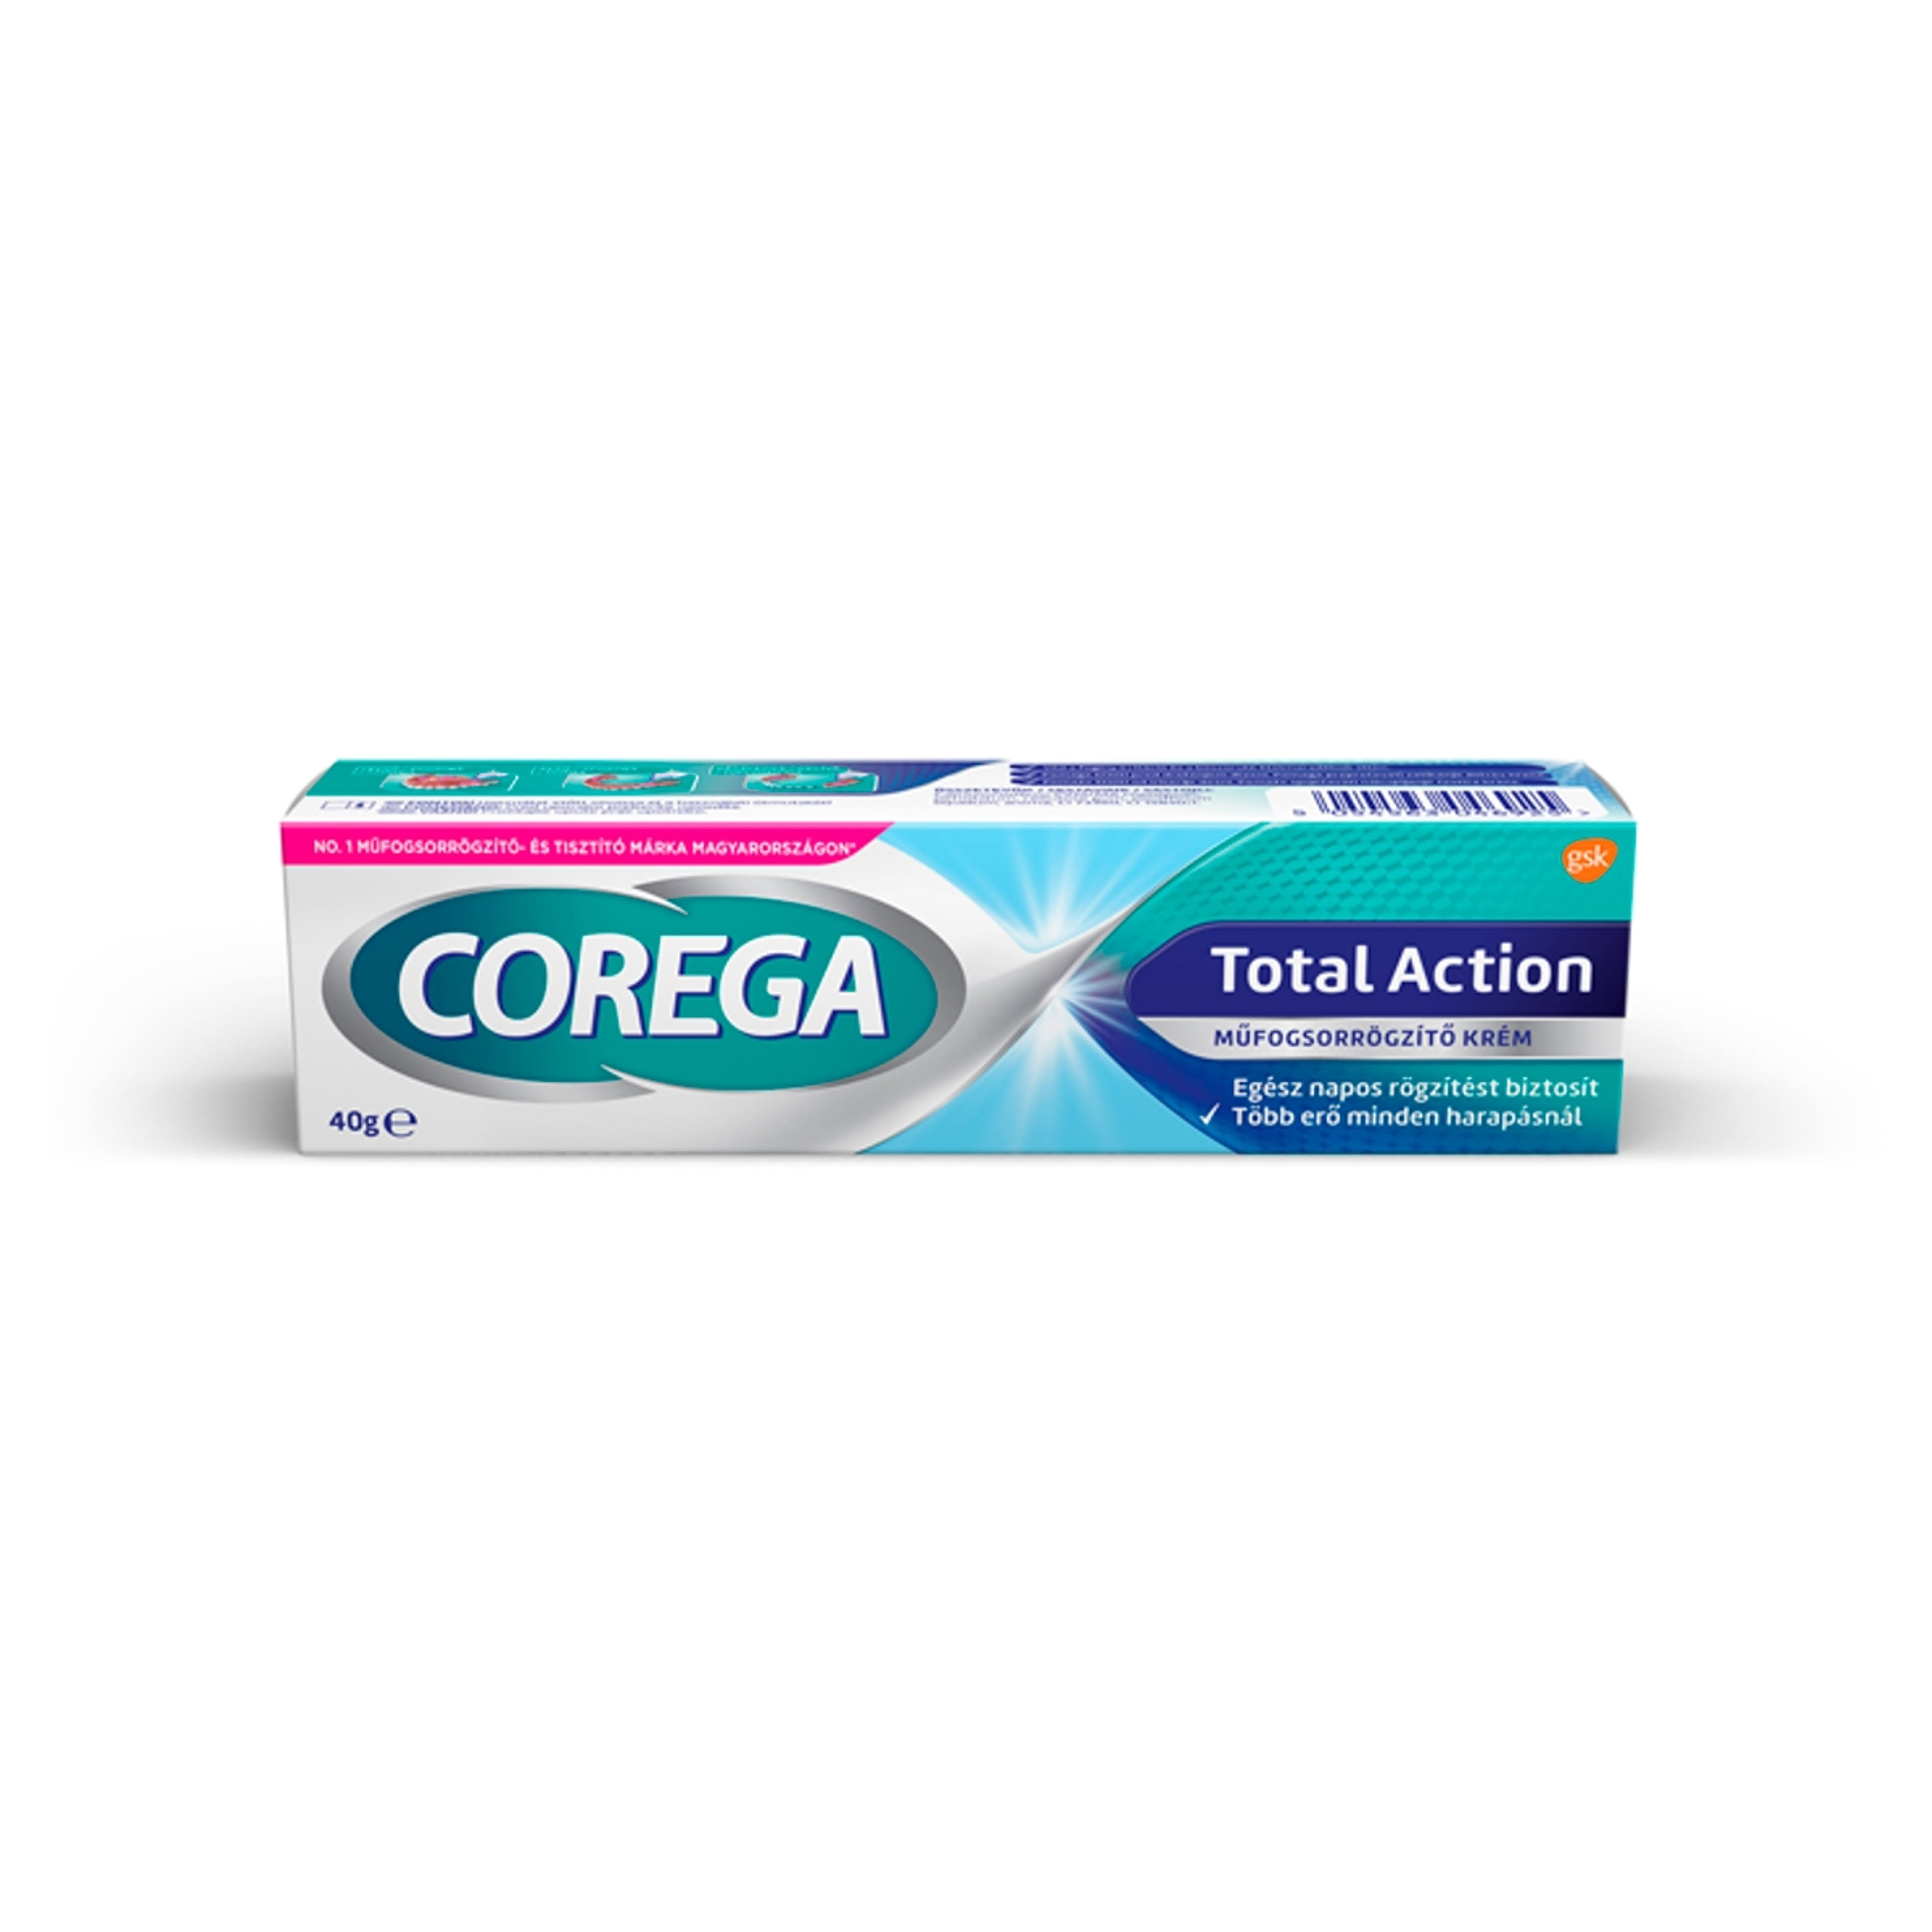 Corega Total Action műfogsorrögzítő krém - 30 g